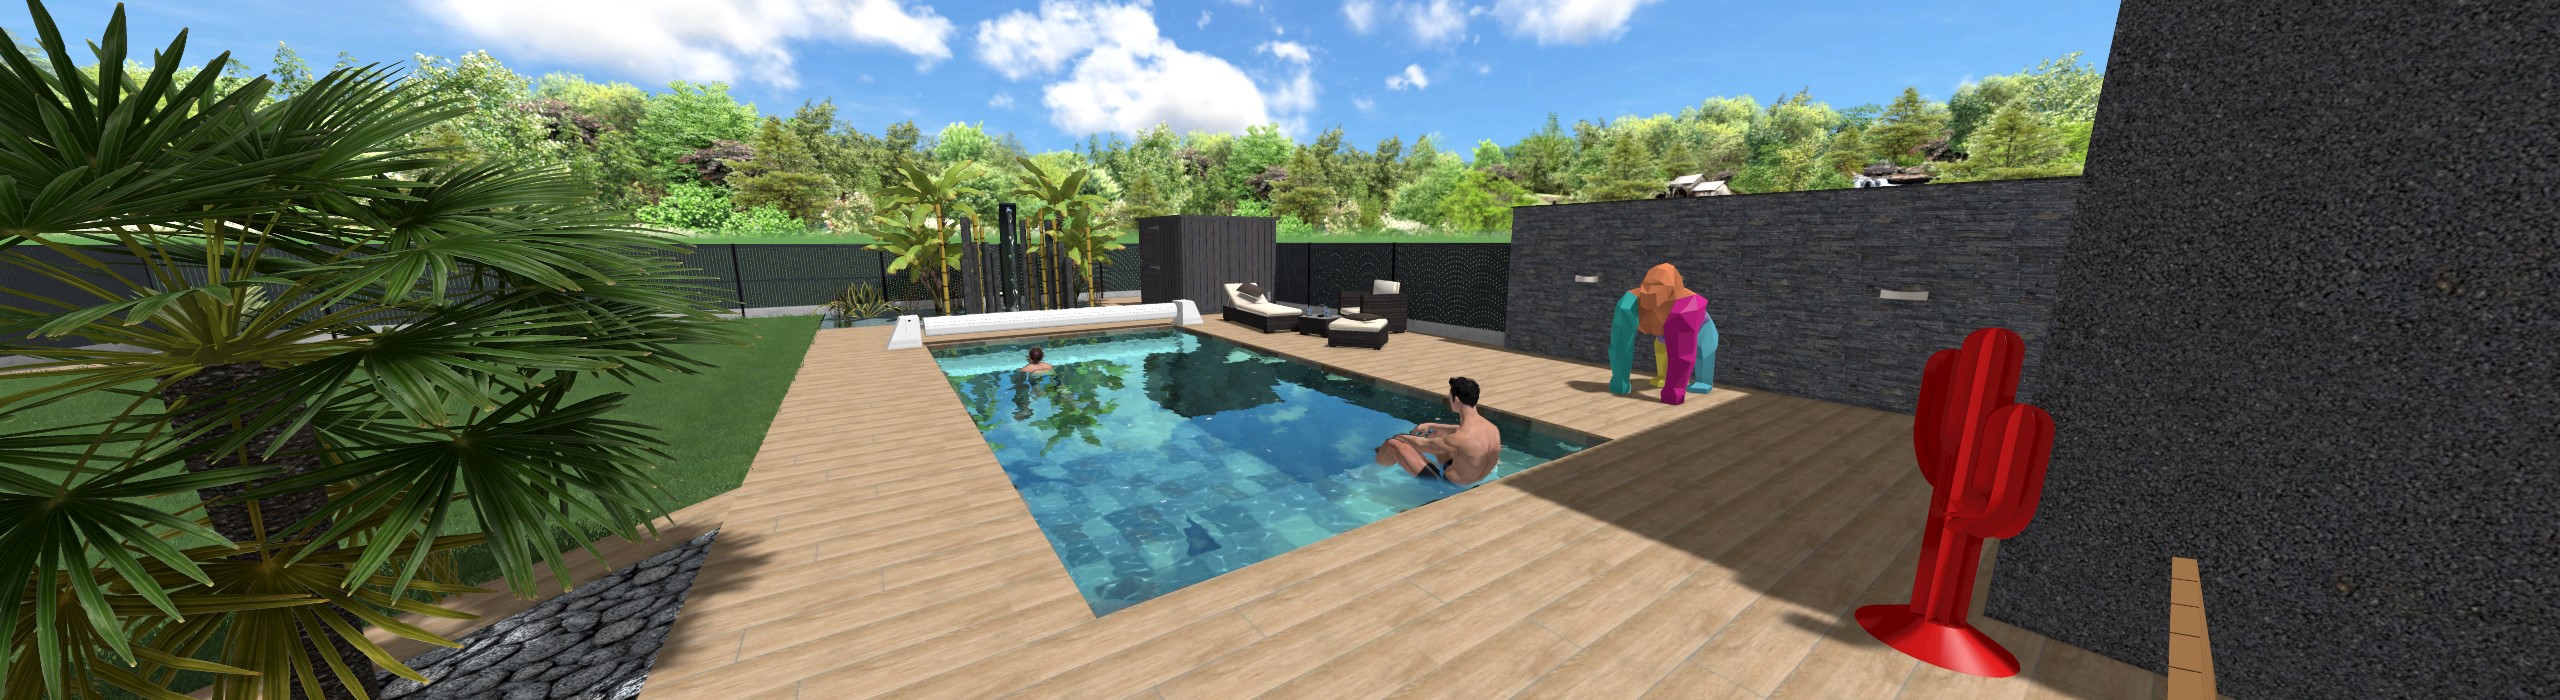 Aménagement jardin avec piscine à Segré